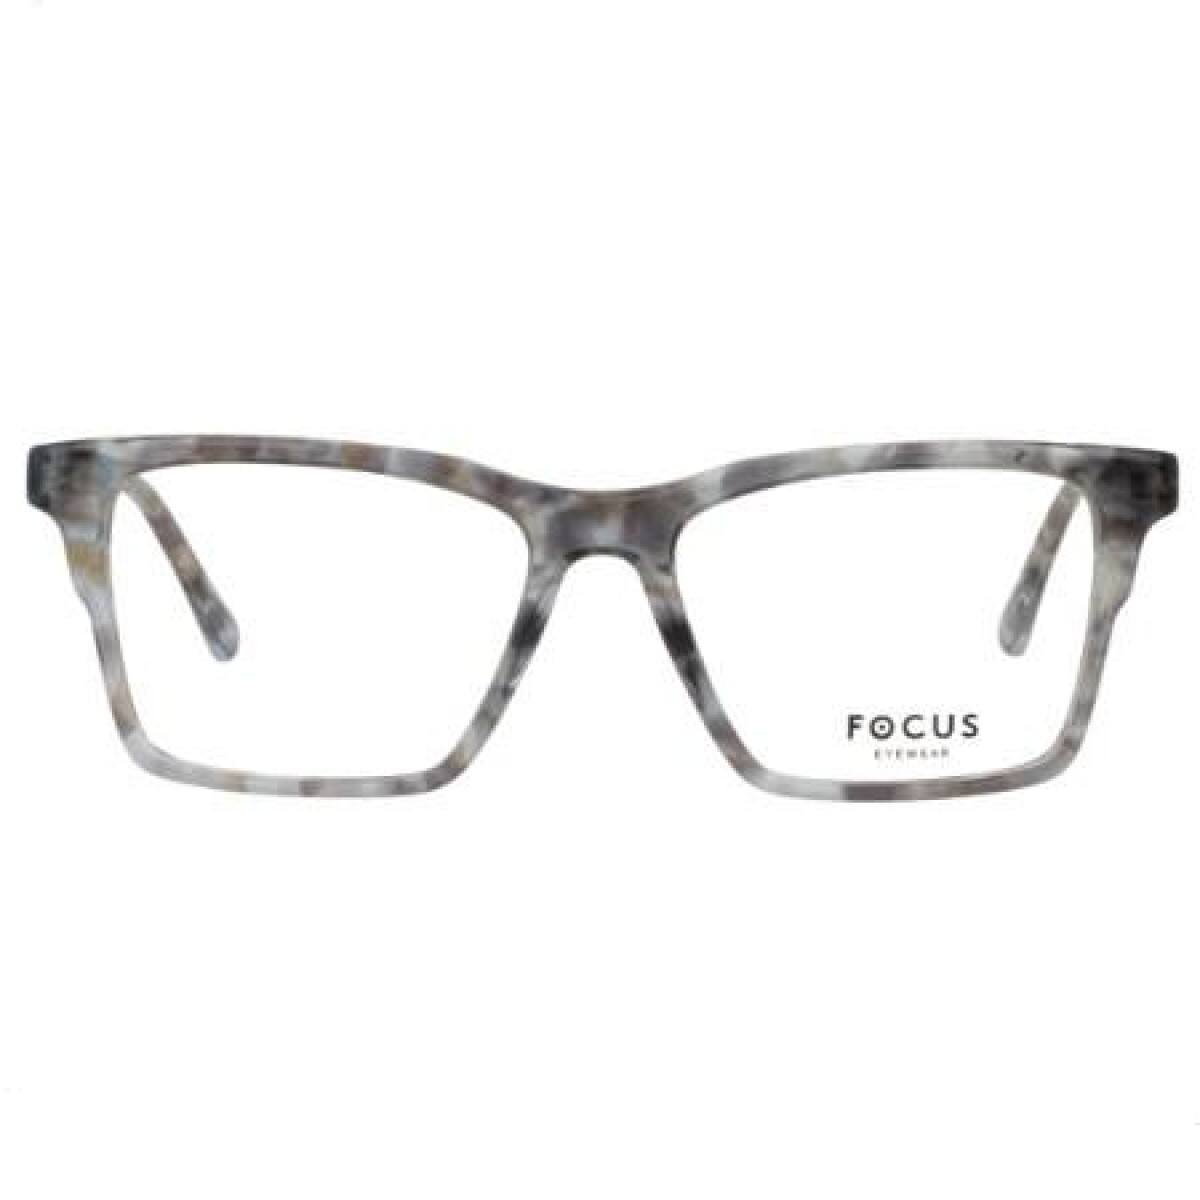 Focus Premium 366 Gris 